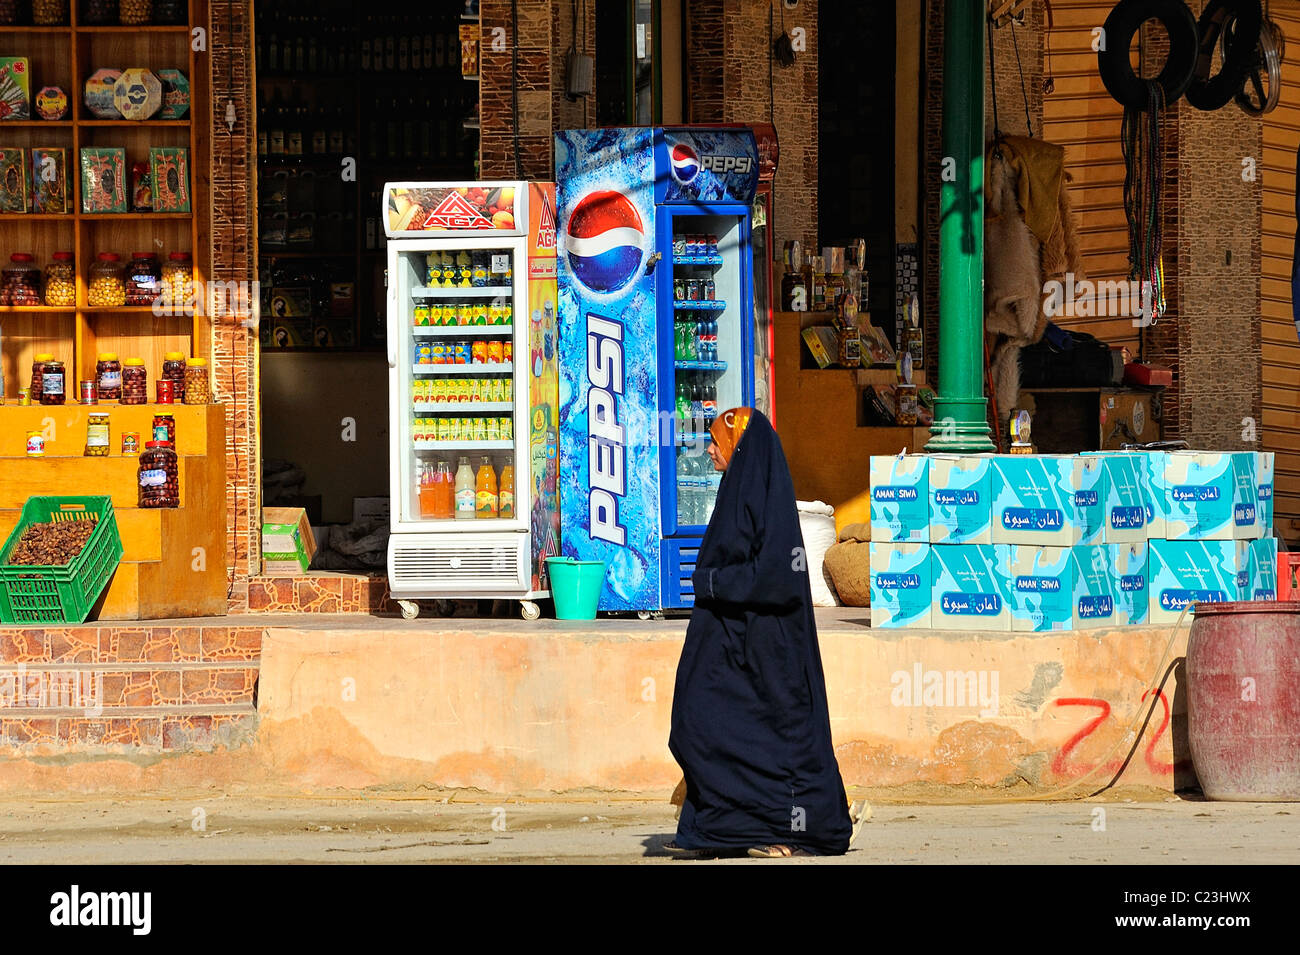 Femme égyptienne voilée marcher dans une rue de la ville de Siwa, désert de l'ouest, l'Egypte Banque D'Images